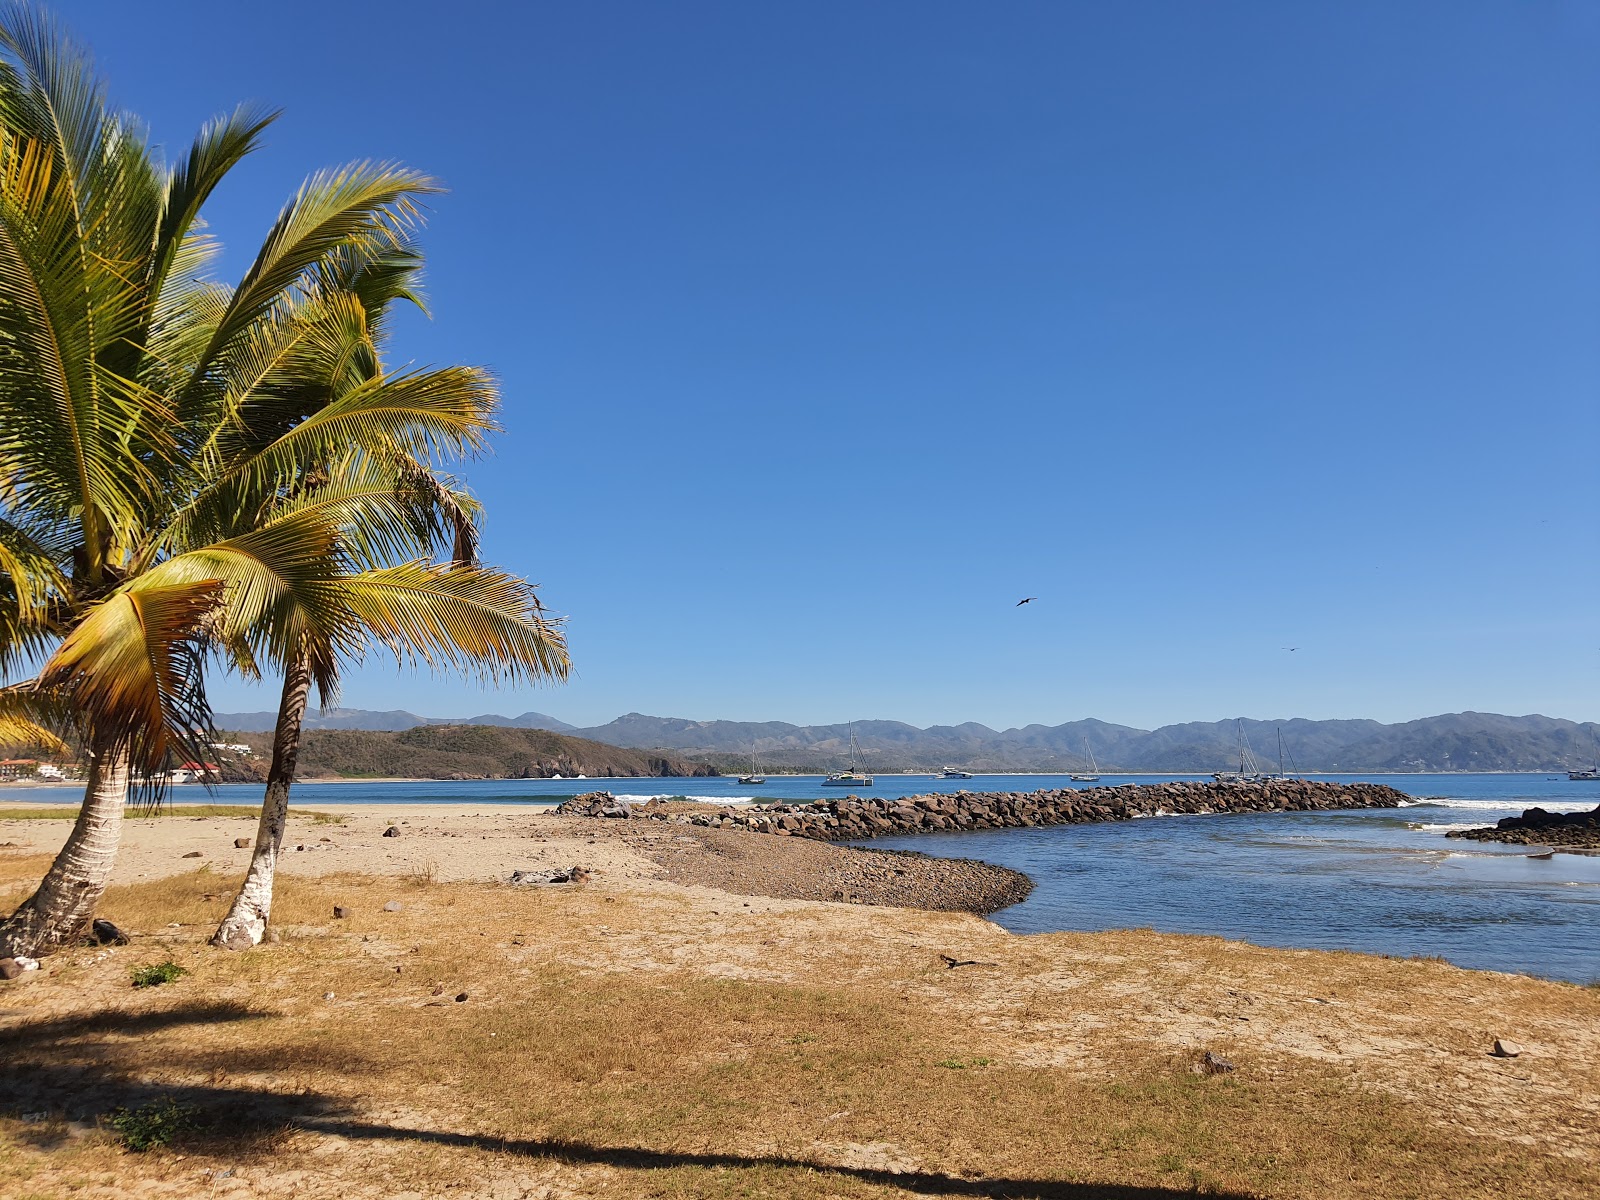 Boca De Iguanas II'in fotoğrafı - rahatlamayı sevenler arasında popüler bir yer